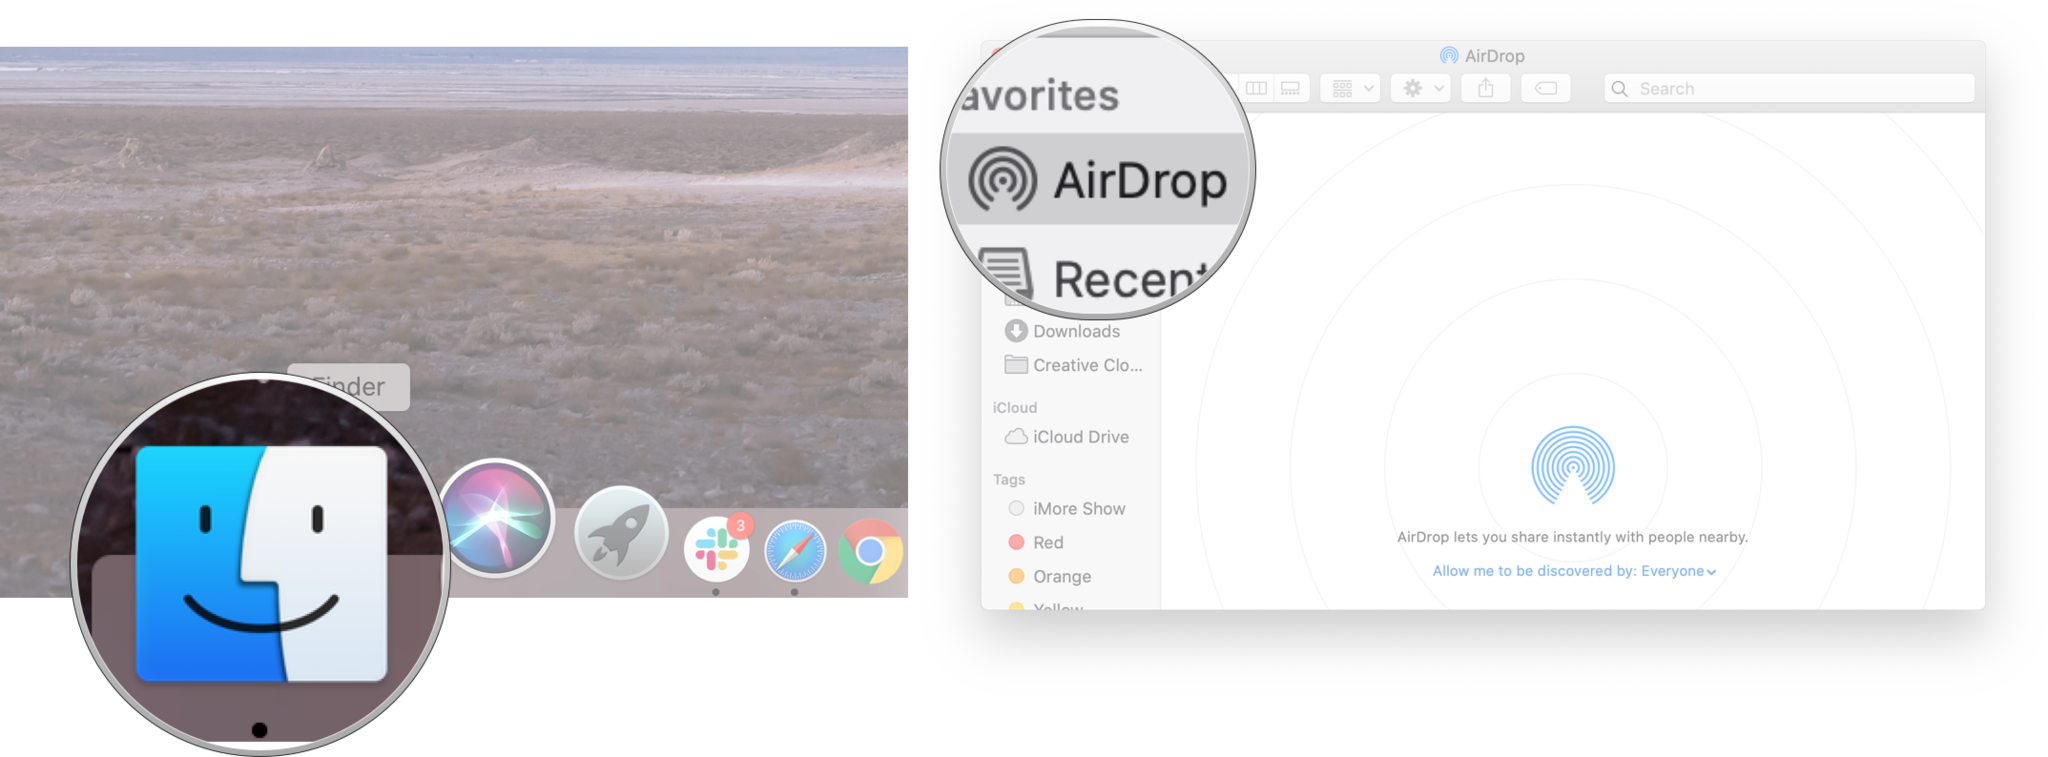 Tetapkan akses AirDrop pada Mac anda: Lancarkan Finder dan klik AirDrop.